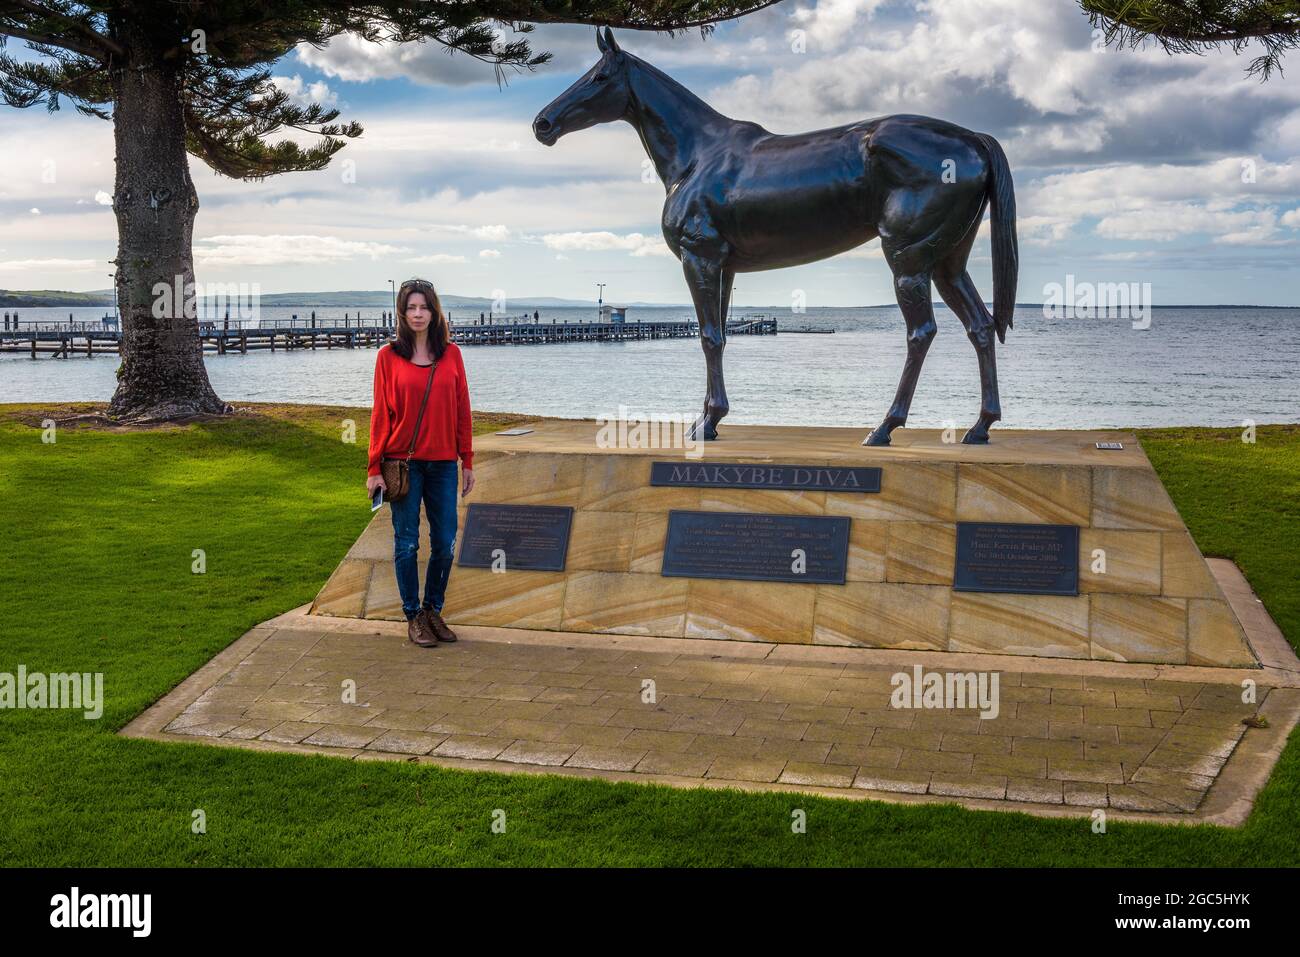 Eine weibliche Touristen steht neben der Bronzeskulptur der Rennpferdelegende Makybe Diva in Port Lincoln in Südaustralien. Stockfoto